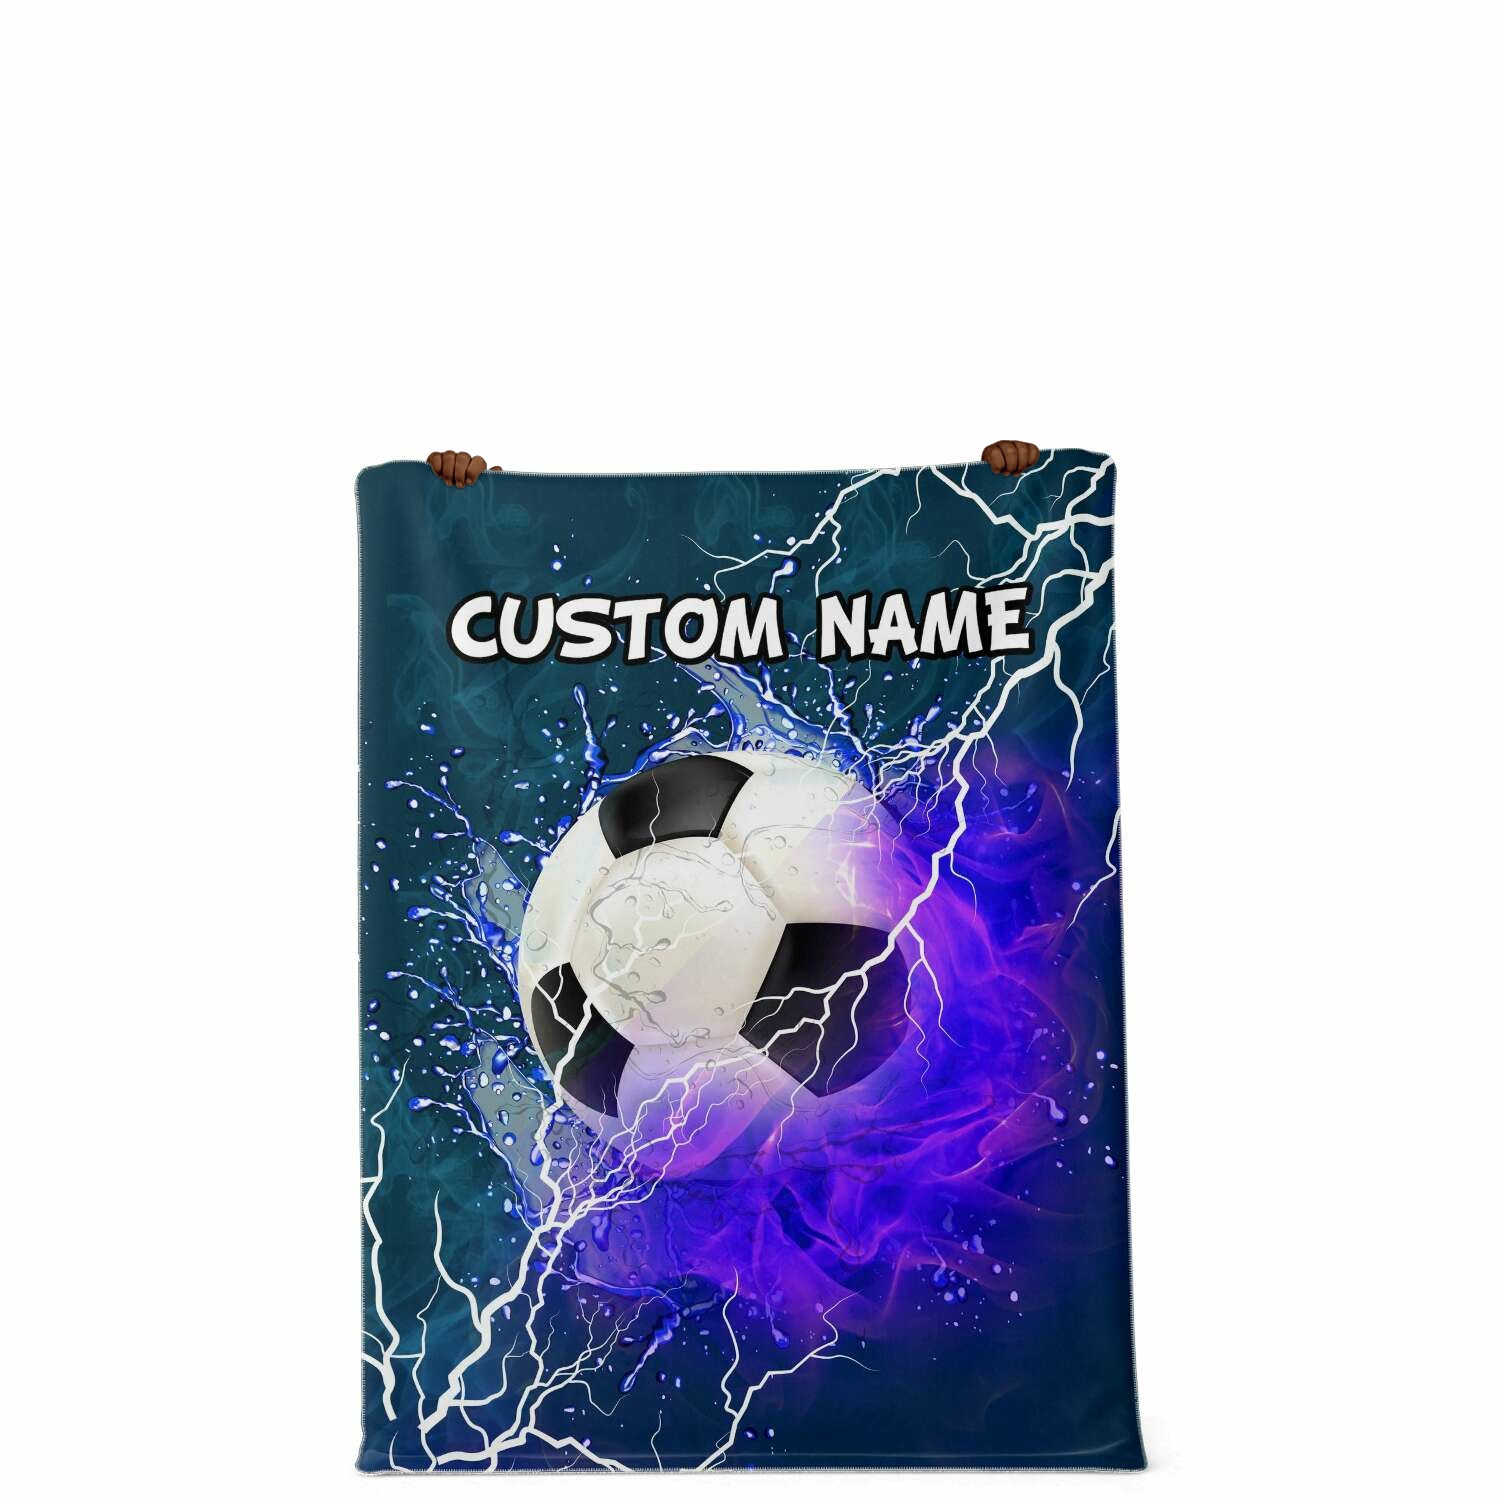 Personalized Name Soccer,Football Blanket, Custom Name Sports Blanket for Boys & Girls